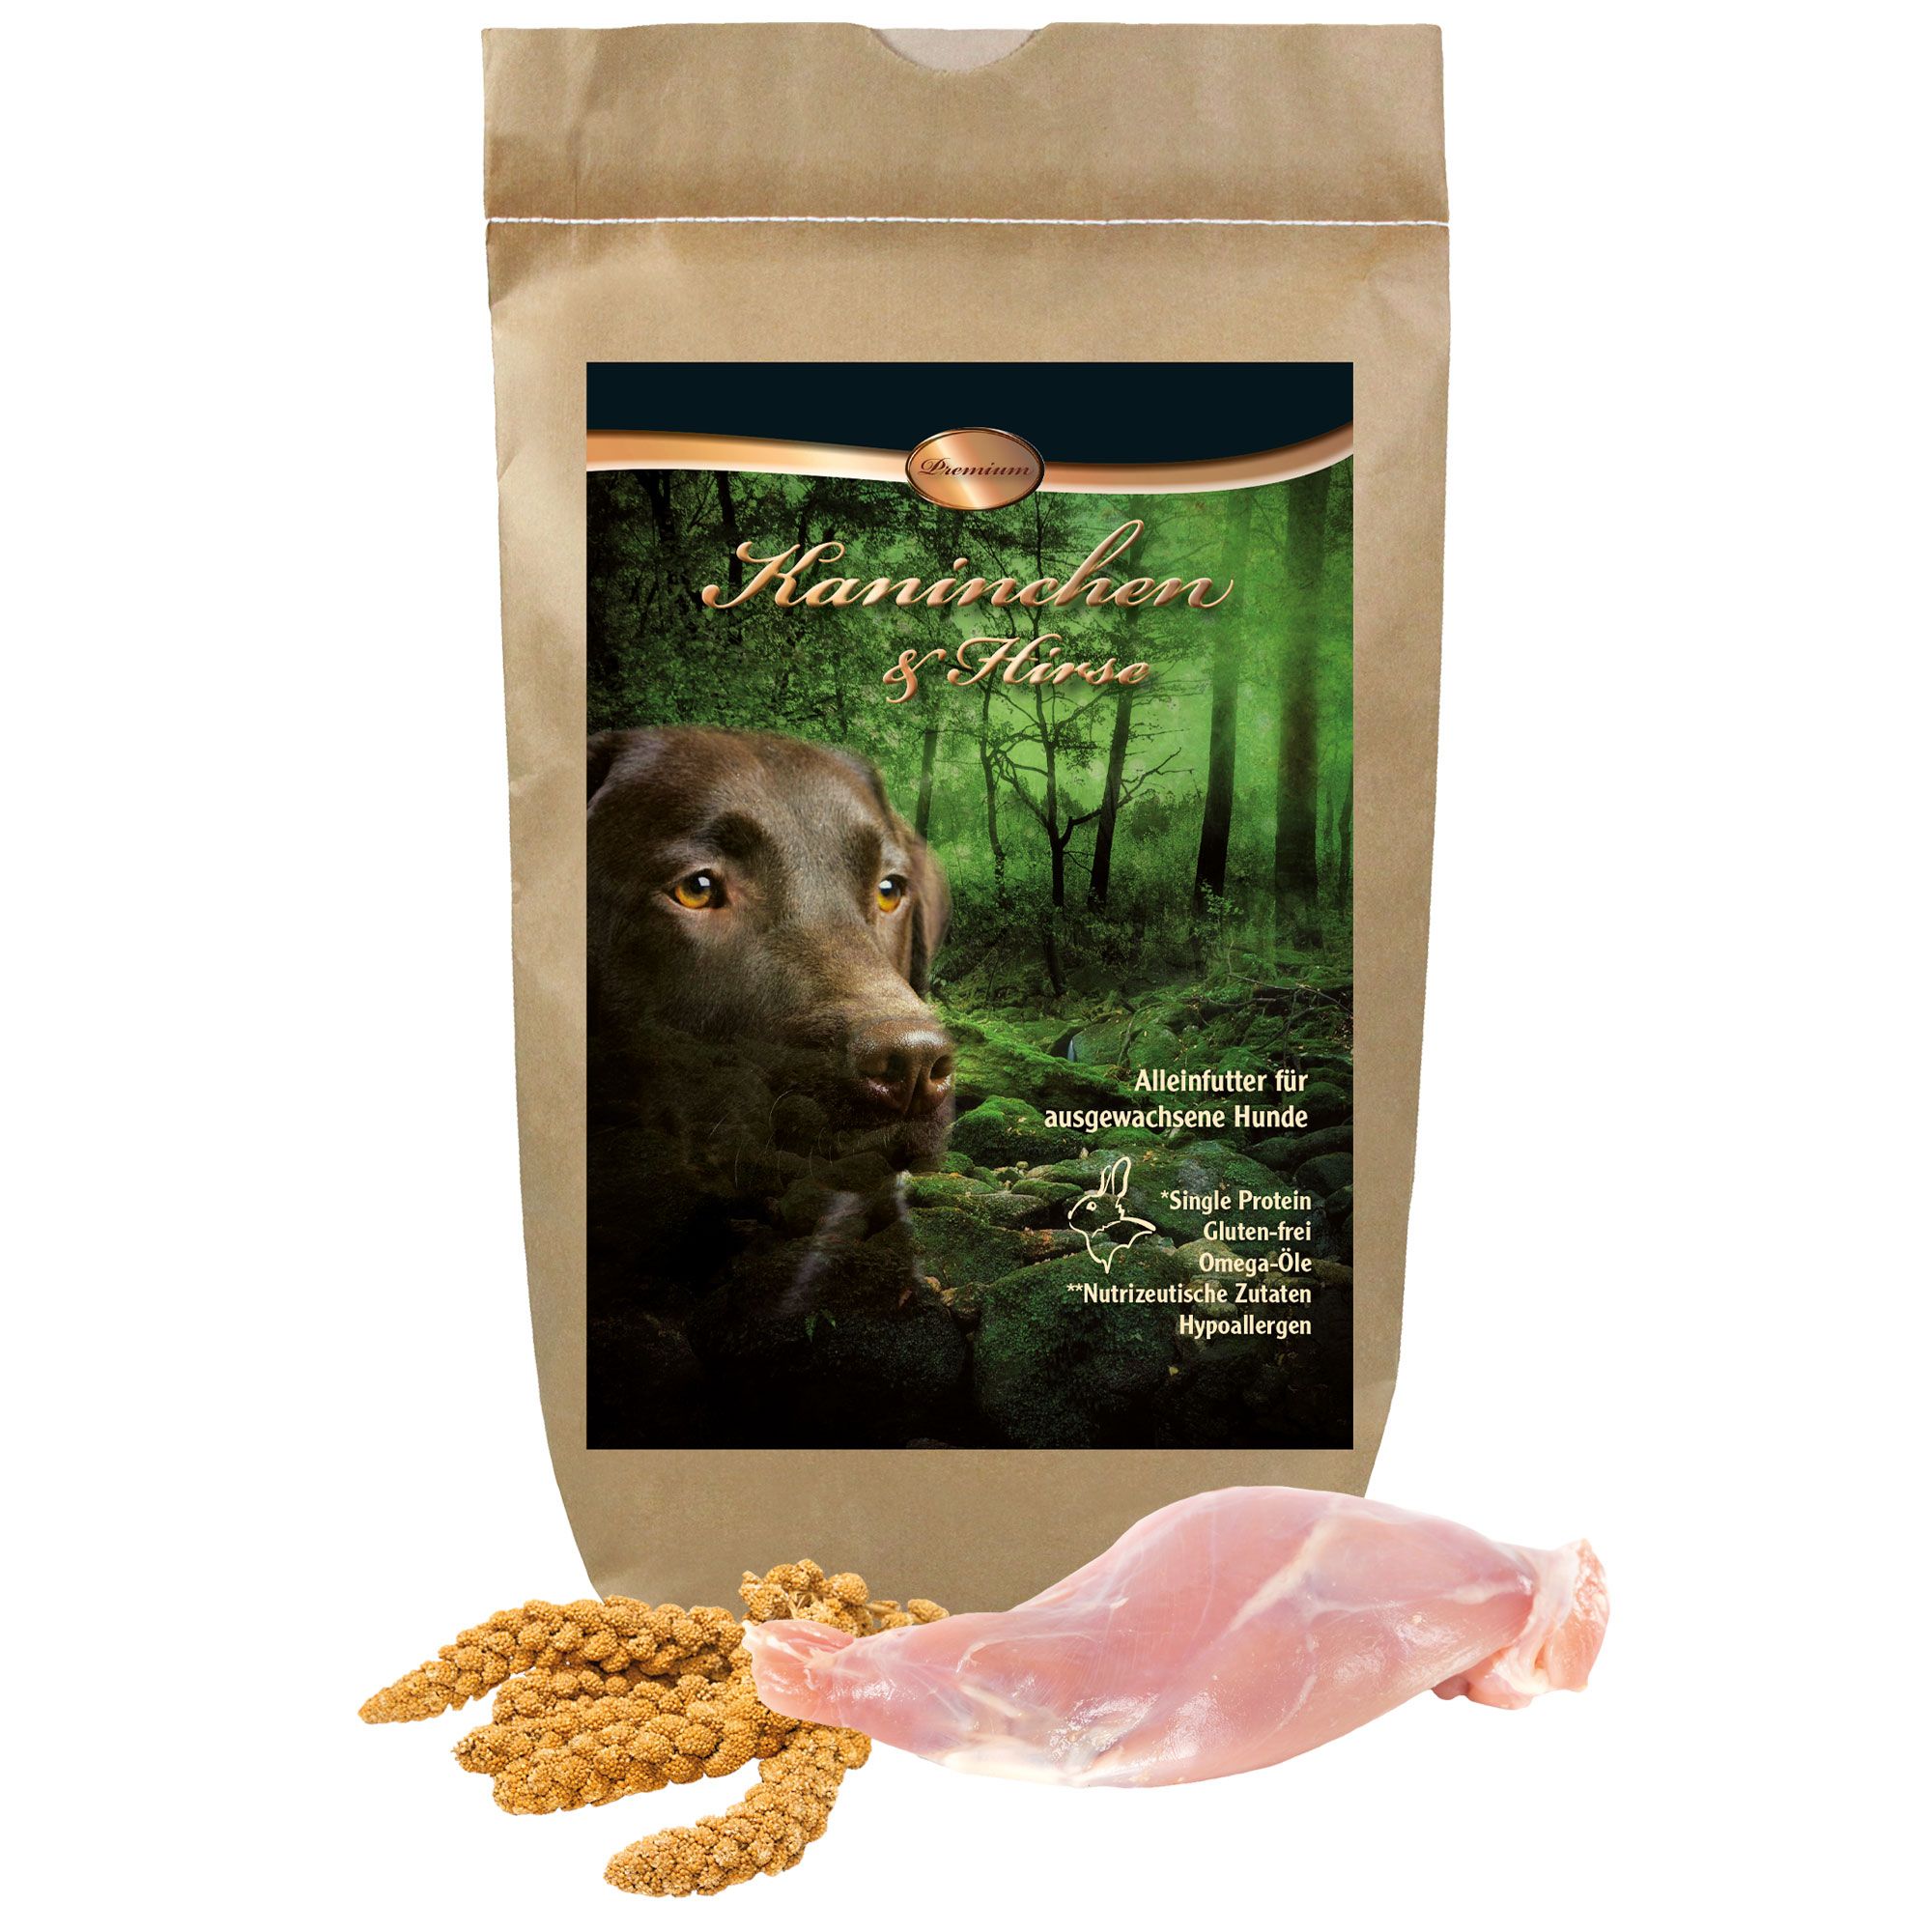 Schecker Kaninchen u Hirse Premium Trockenfutter - Single Protein - glutenfrei